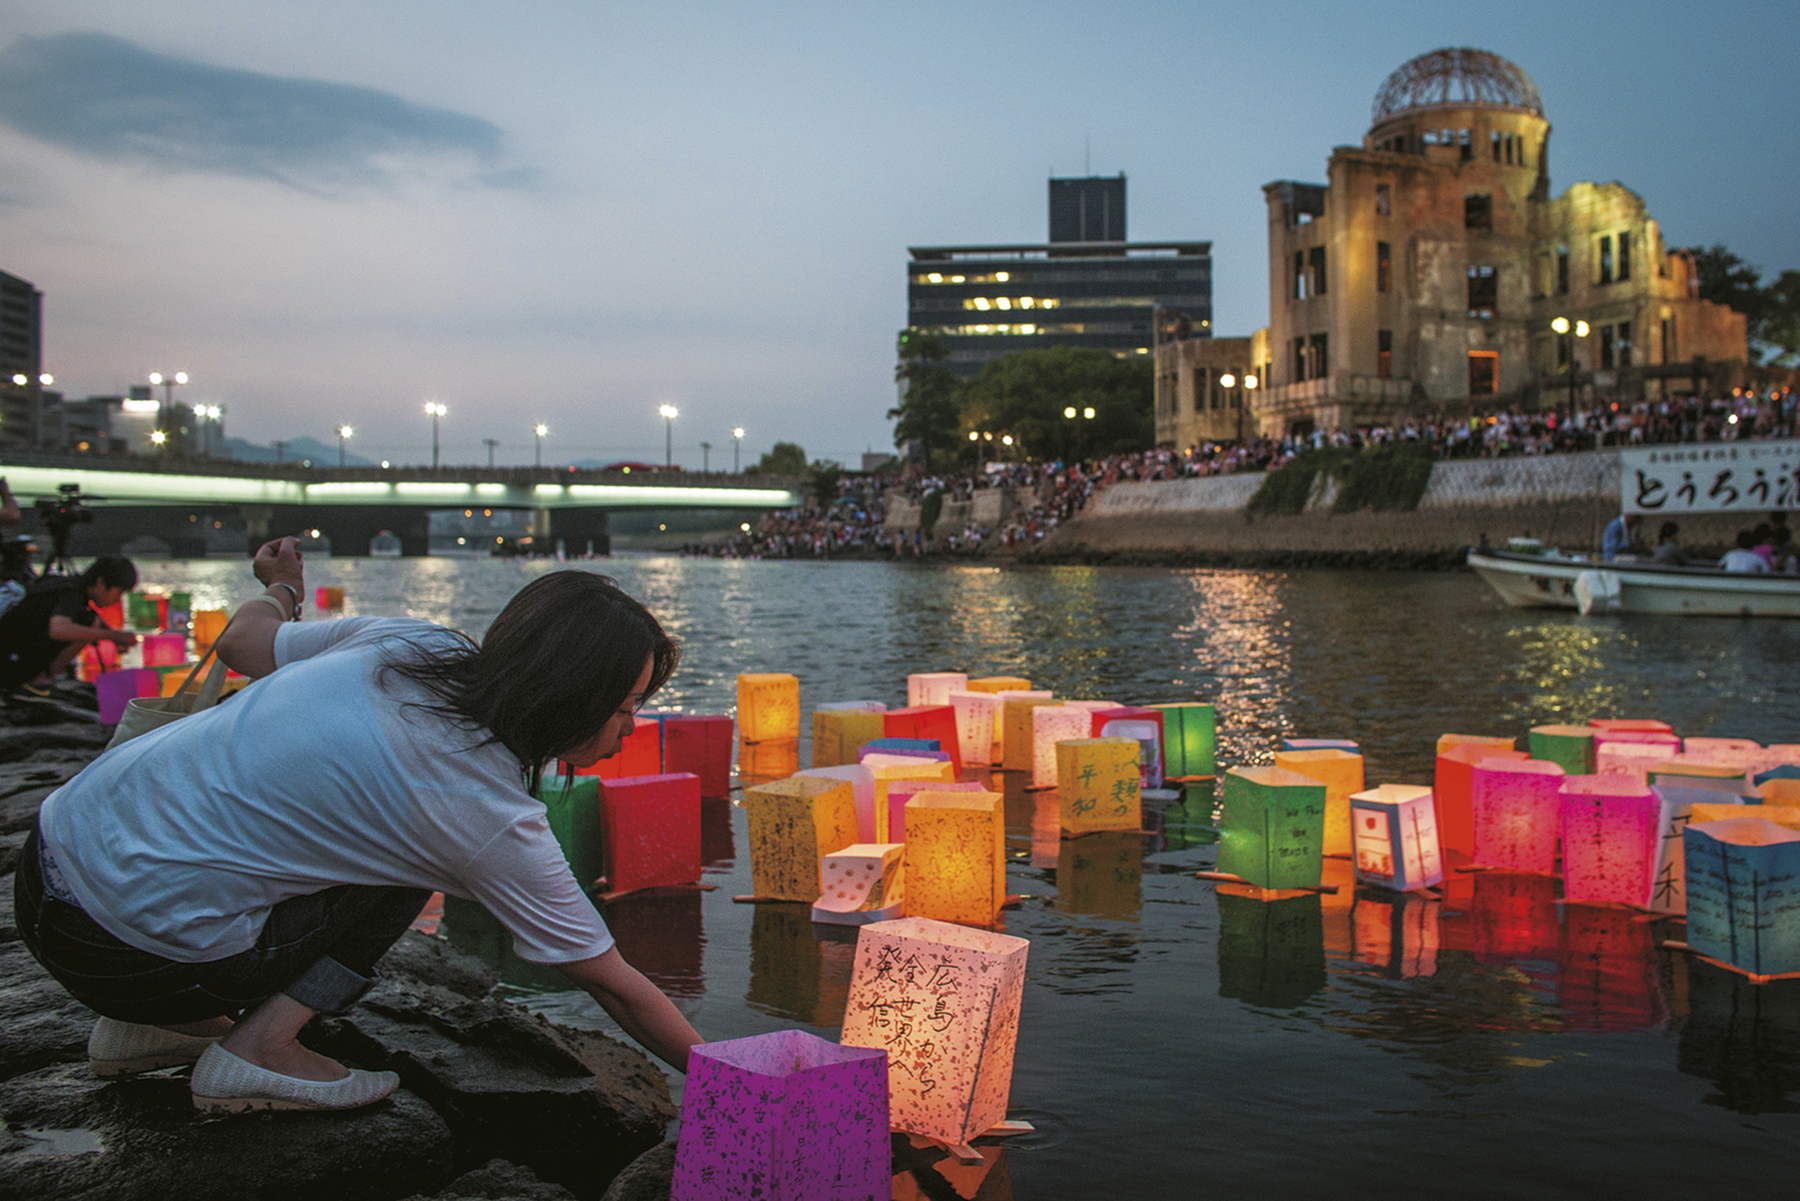 Fotografia. Uma mulher asiática, usando camisa e calça, está agachada as margens de um rio, onde há diversas lanternas com texto escrito no idioma japonês. No fundo, ruína de um edifício.